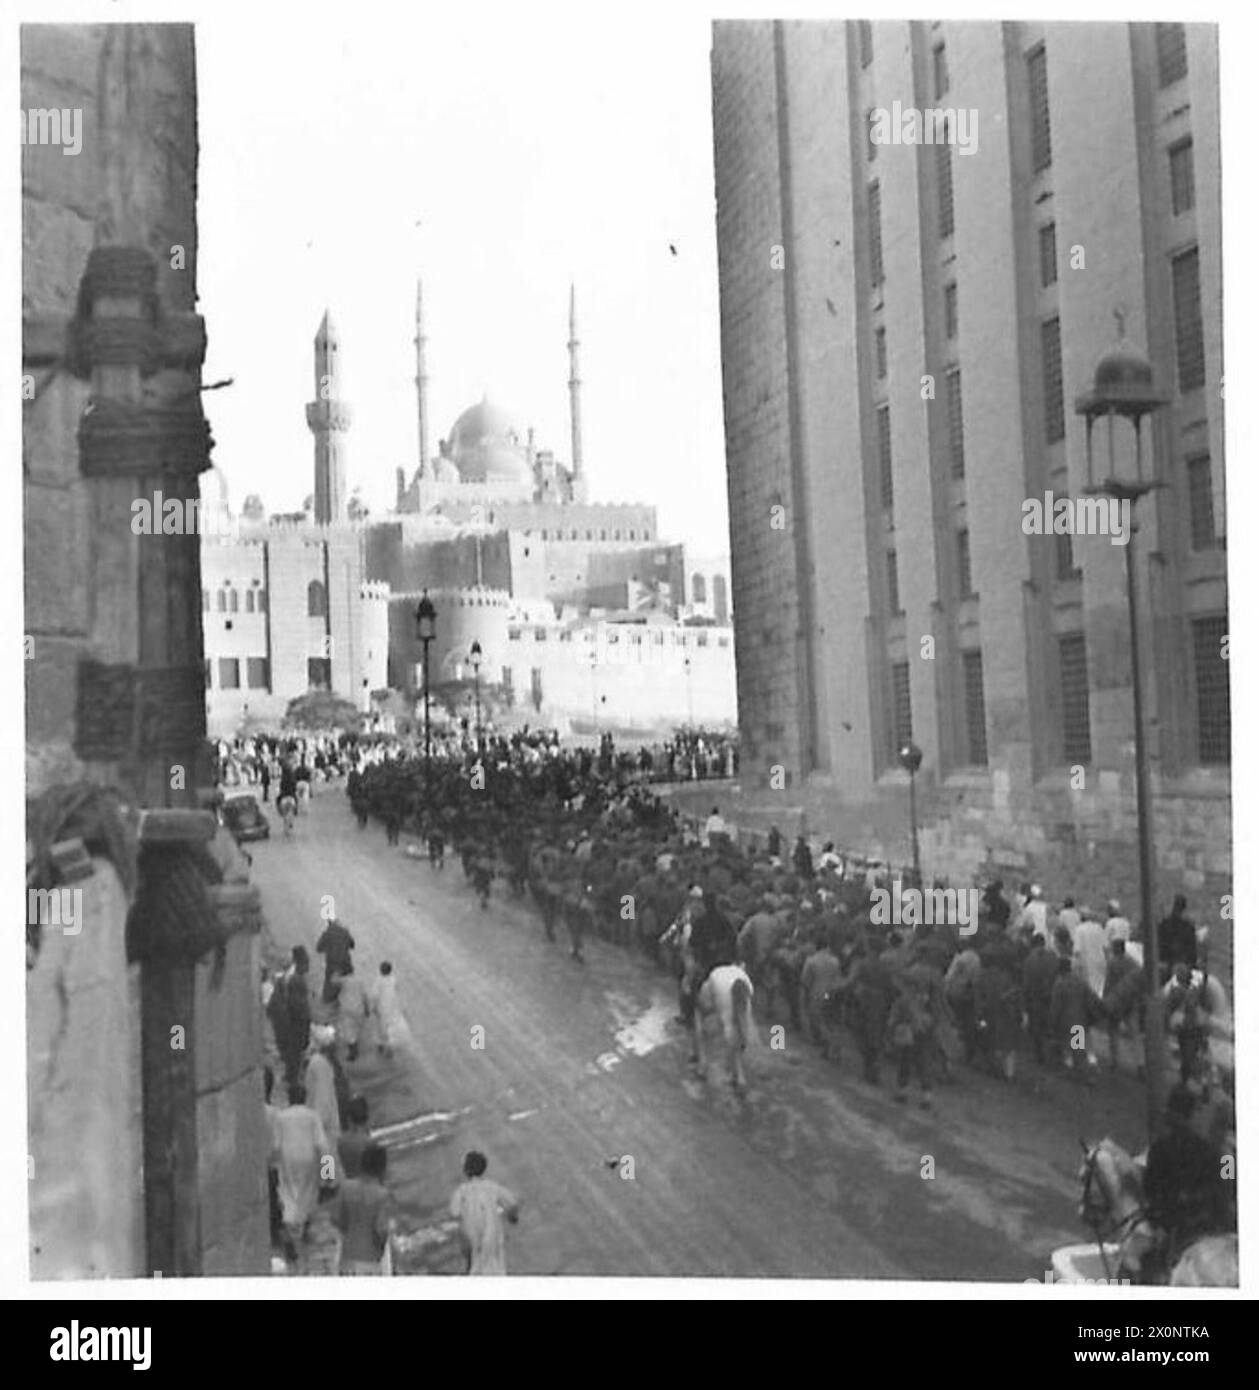 PRIGIONIERI TEDESCHI E ITALIANI MARCIANO ATTRAVERSO IL CAIRO - i prigionieri vicini alla Cittadella. In lontananza si vede la moschea Mahomet Ali, e sulla destra, il lato della moschea del Sultano Hussein. Negativo fotografico, British Army Foto Stock